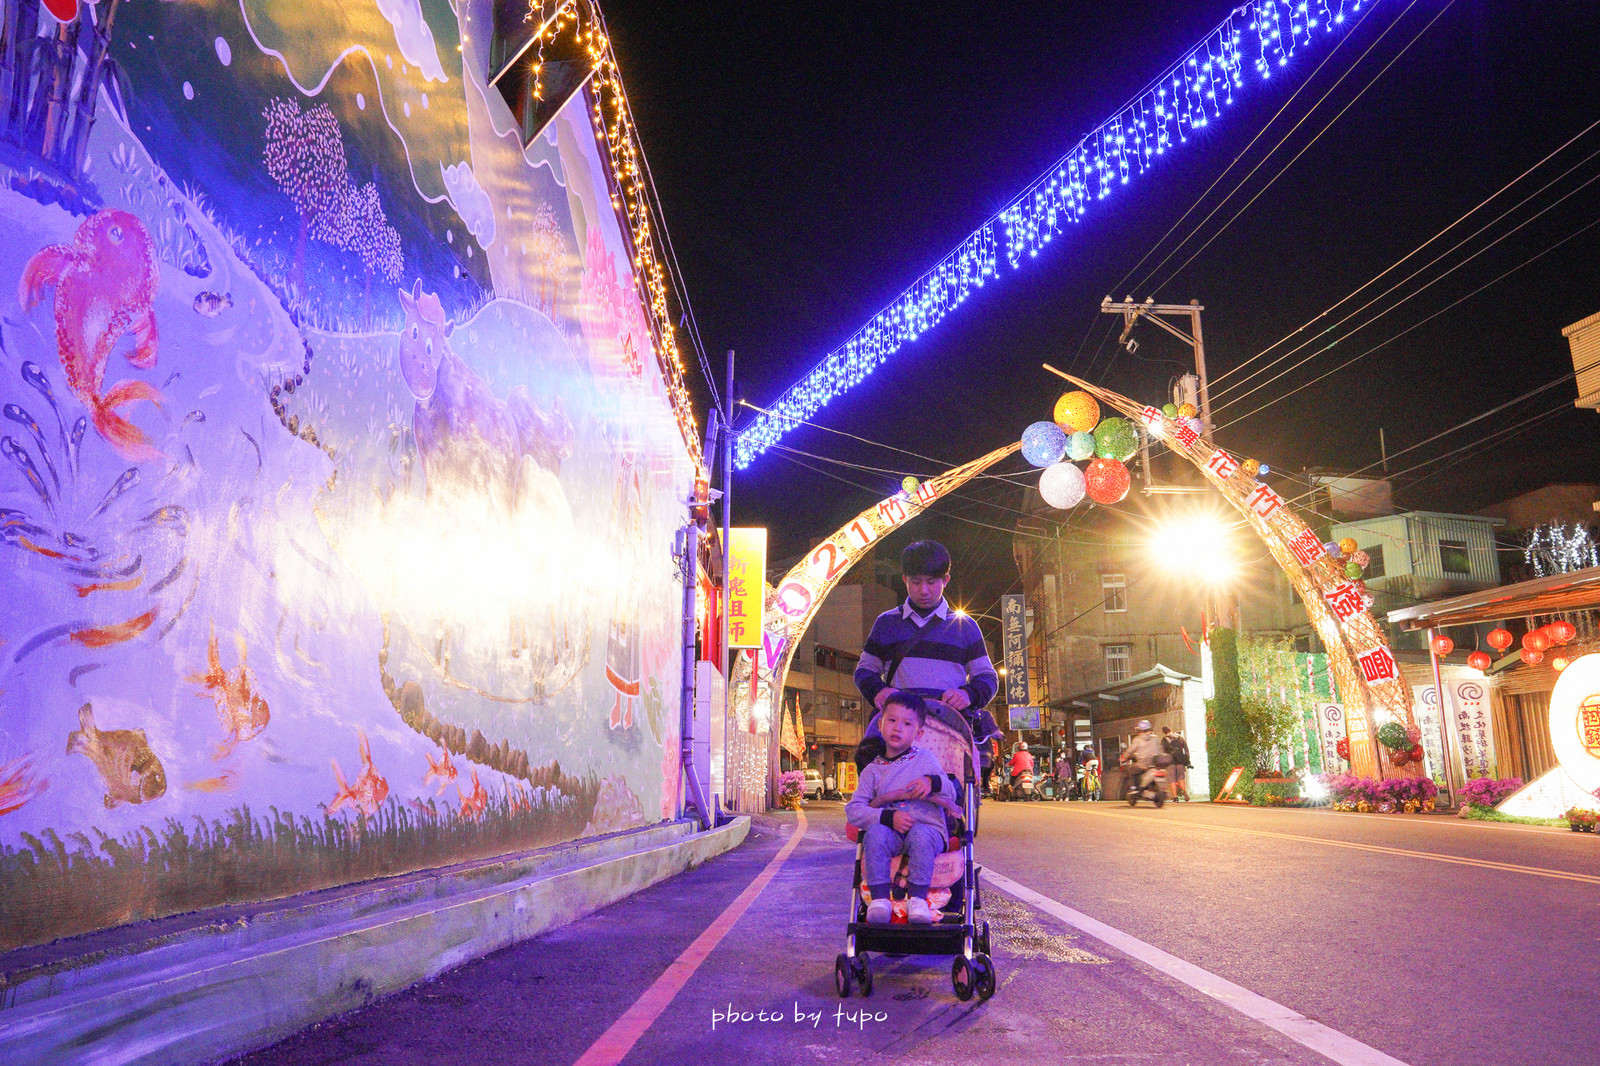 南投竹山》竹山燈會就醬玩～2021竹山牛舞花竹藝燈會，全國最長展出竹子主題燈會，不繞路五個景點懶人包。